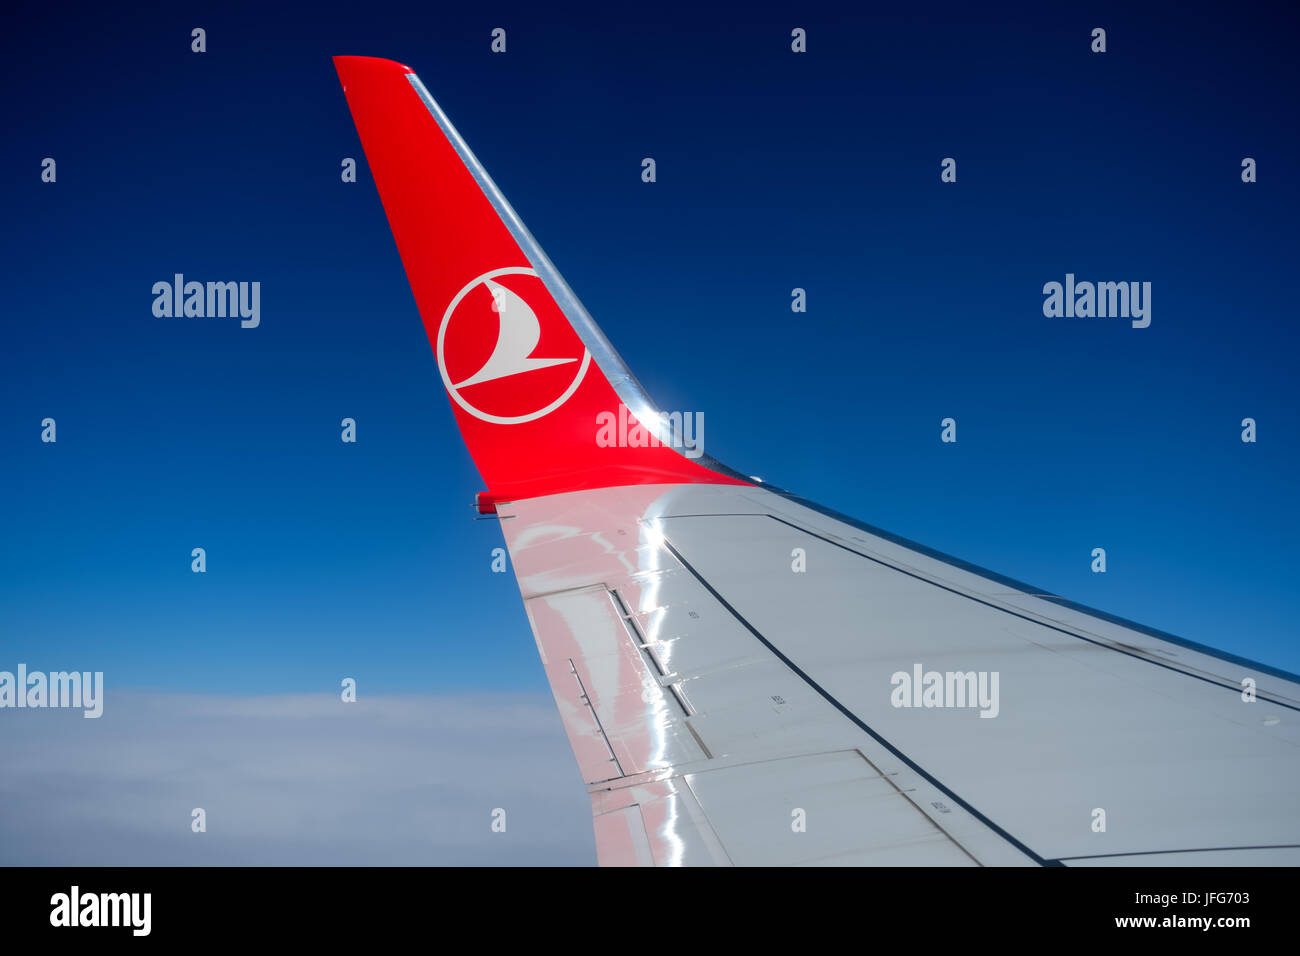 Turkish Airlines ala de avión por encima de las nubes Foto de stock